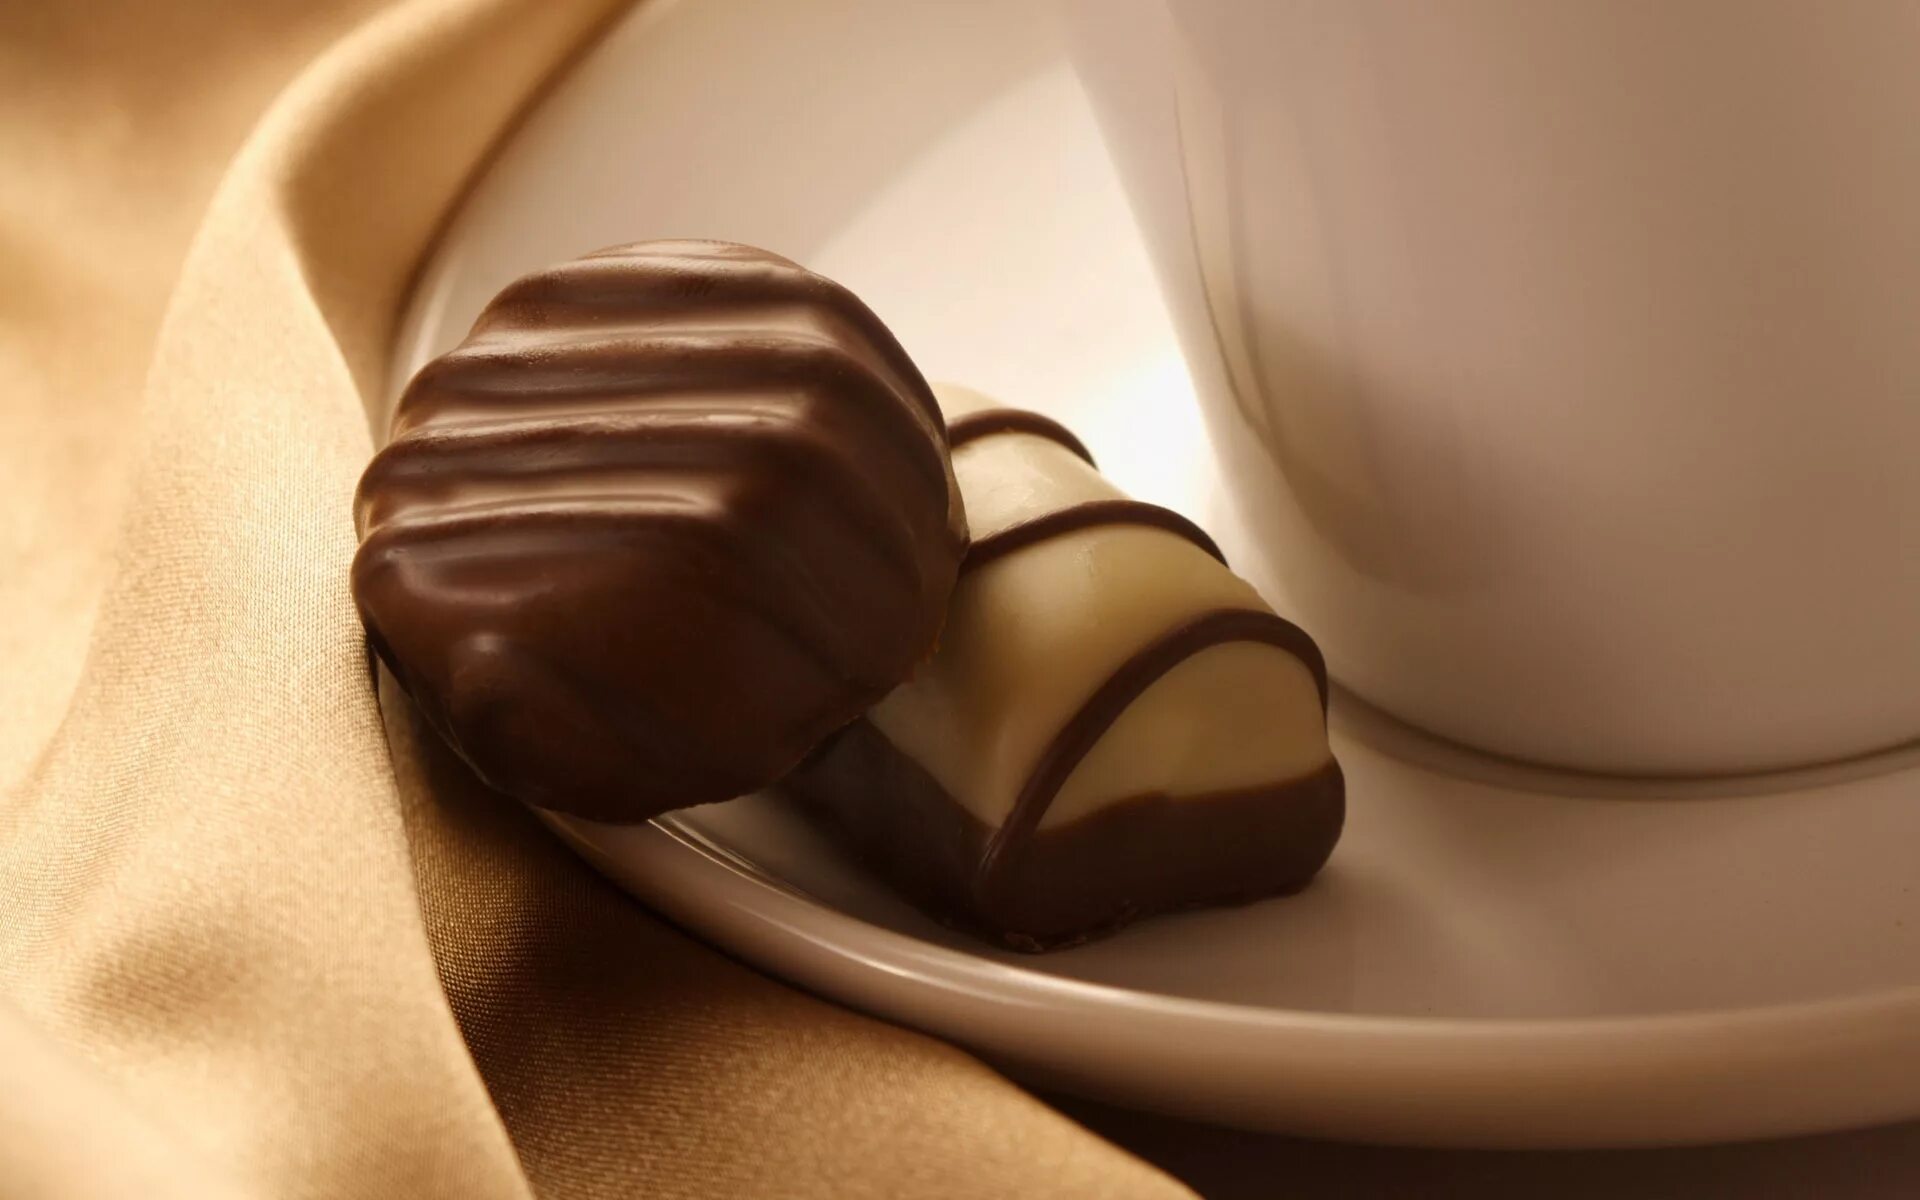 Шоколадные конфеты. Конфеты шоколад. Кофе и шоколад. Кофе с шоколадными конфетами. Сладости тела